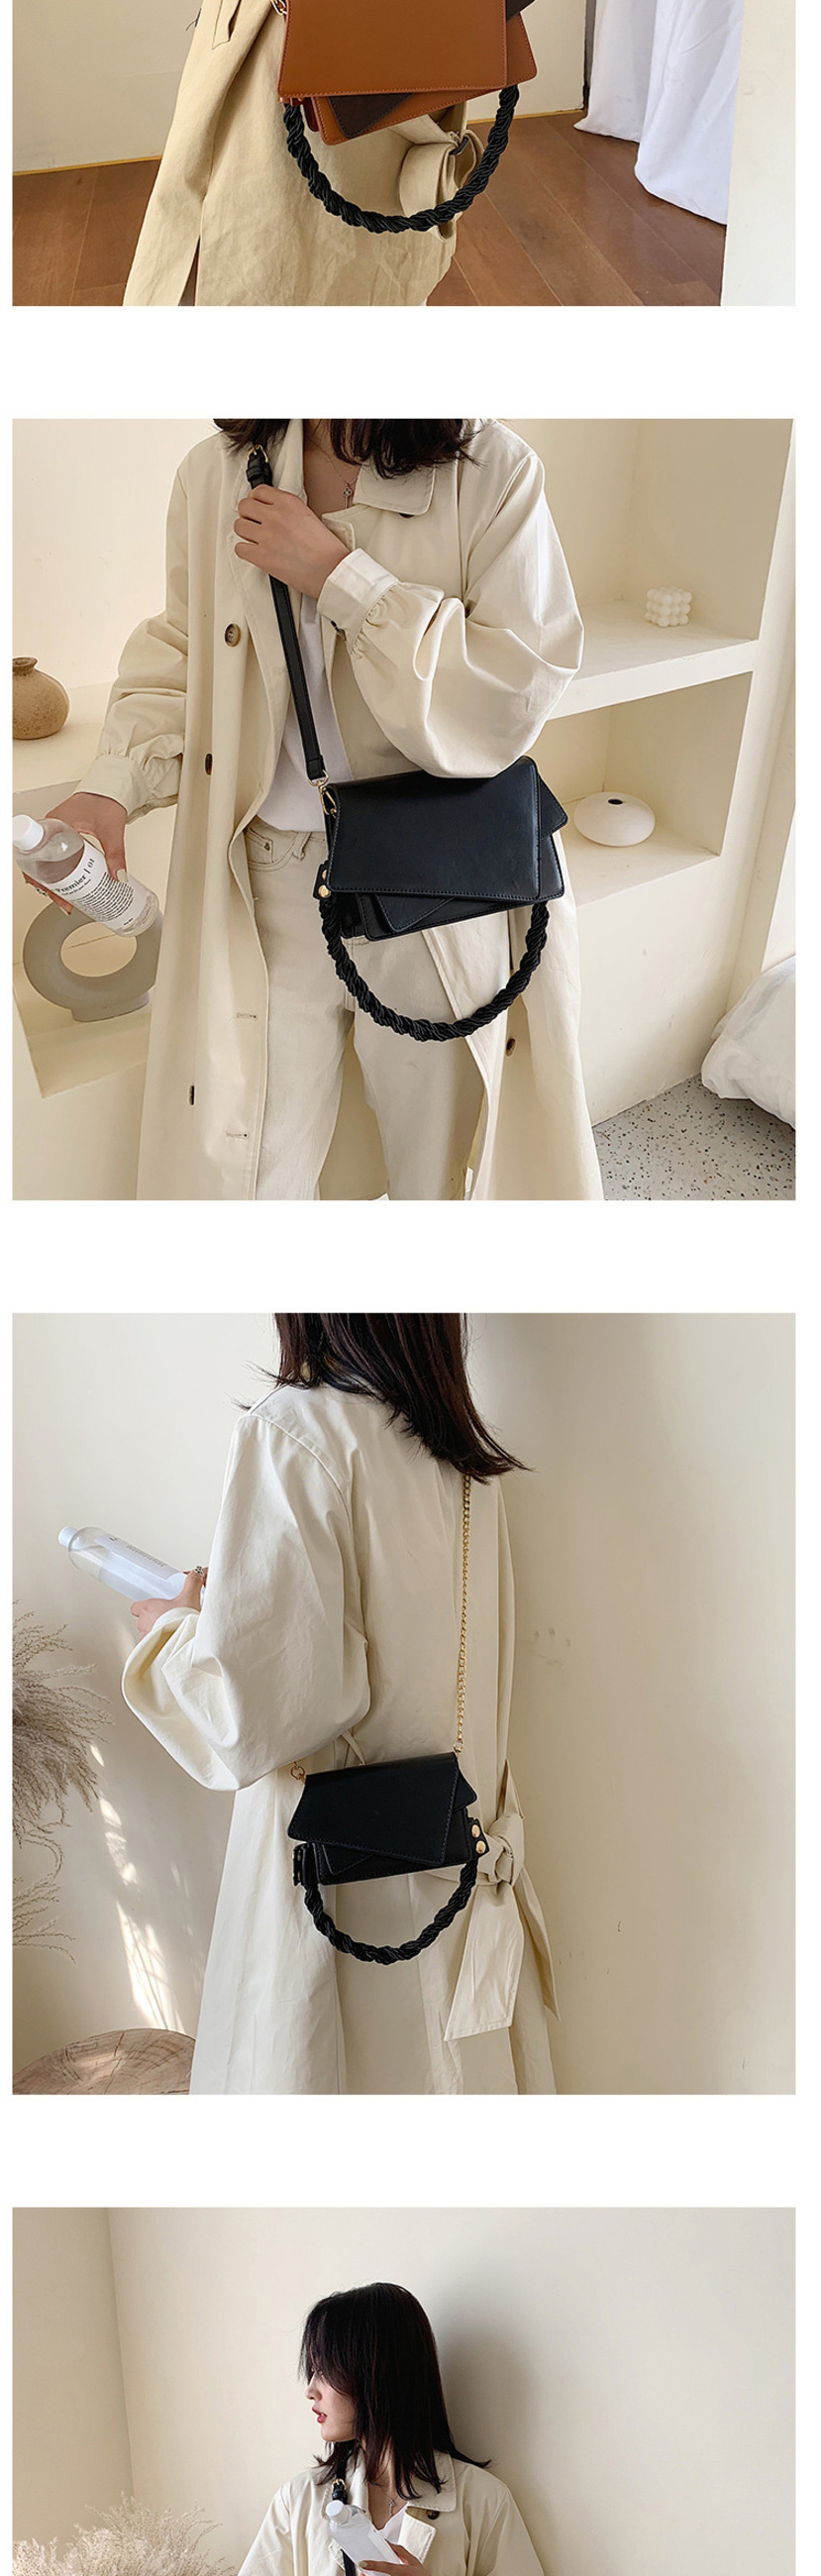 Fashion Black Broadband Contrast Shoulder Crossbody Bag,Shoulder bags